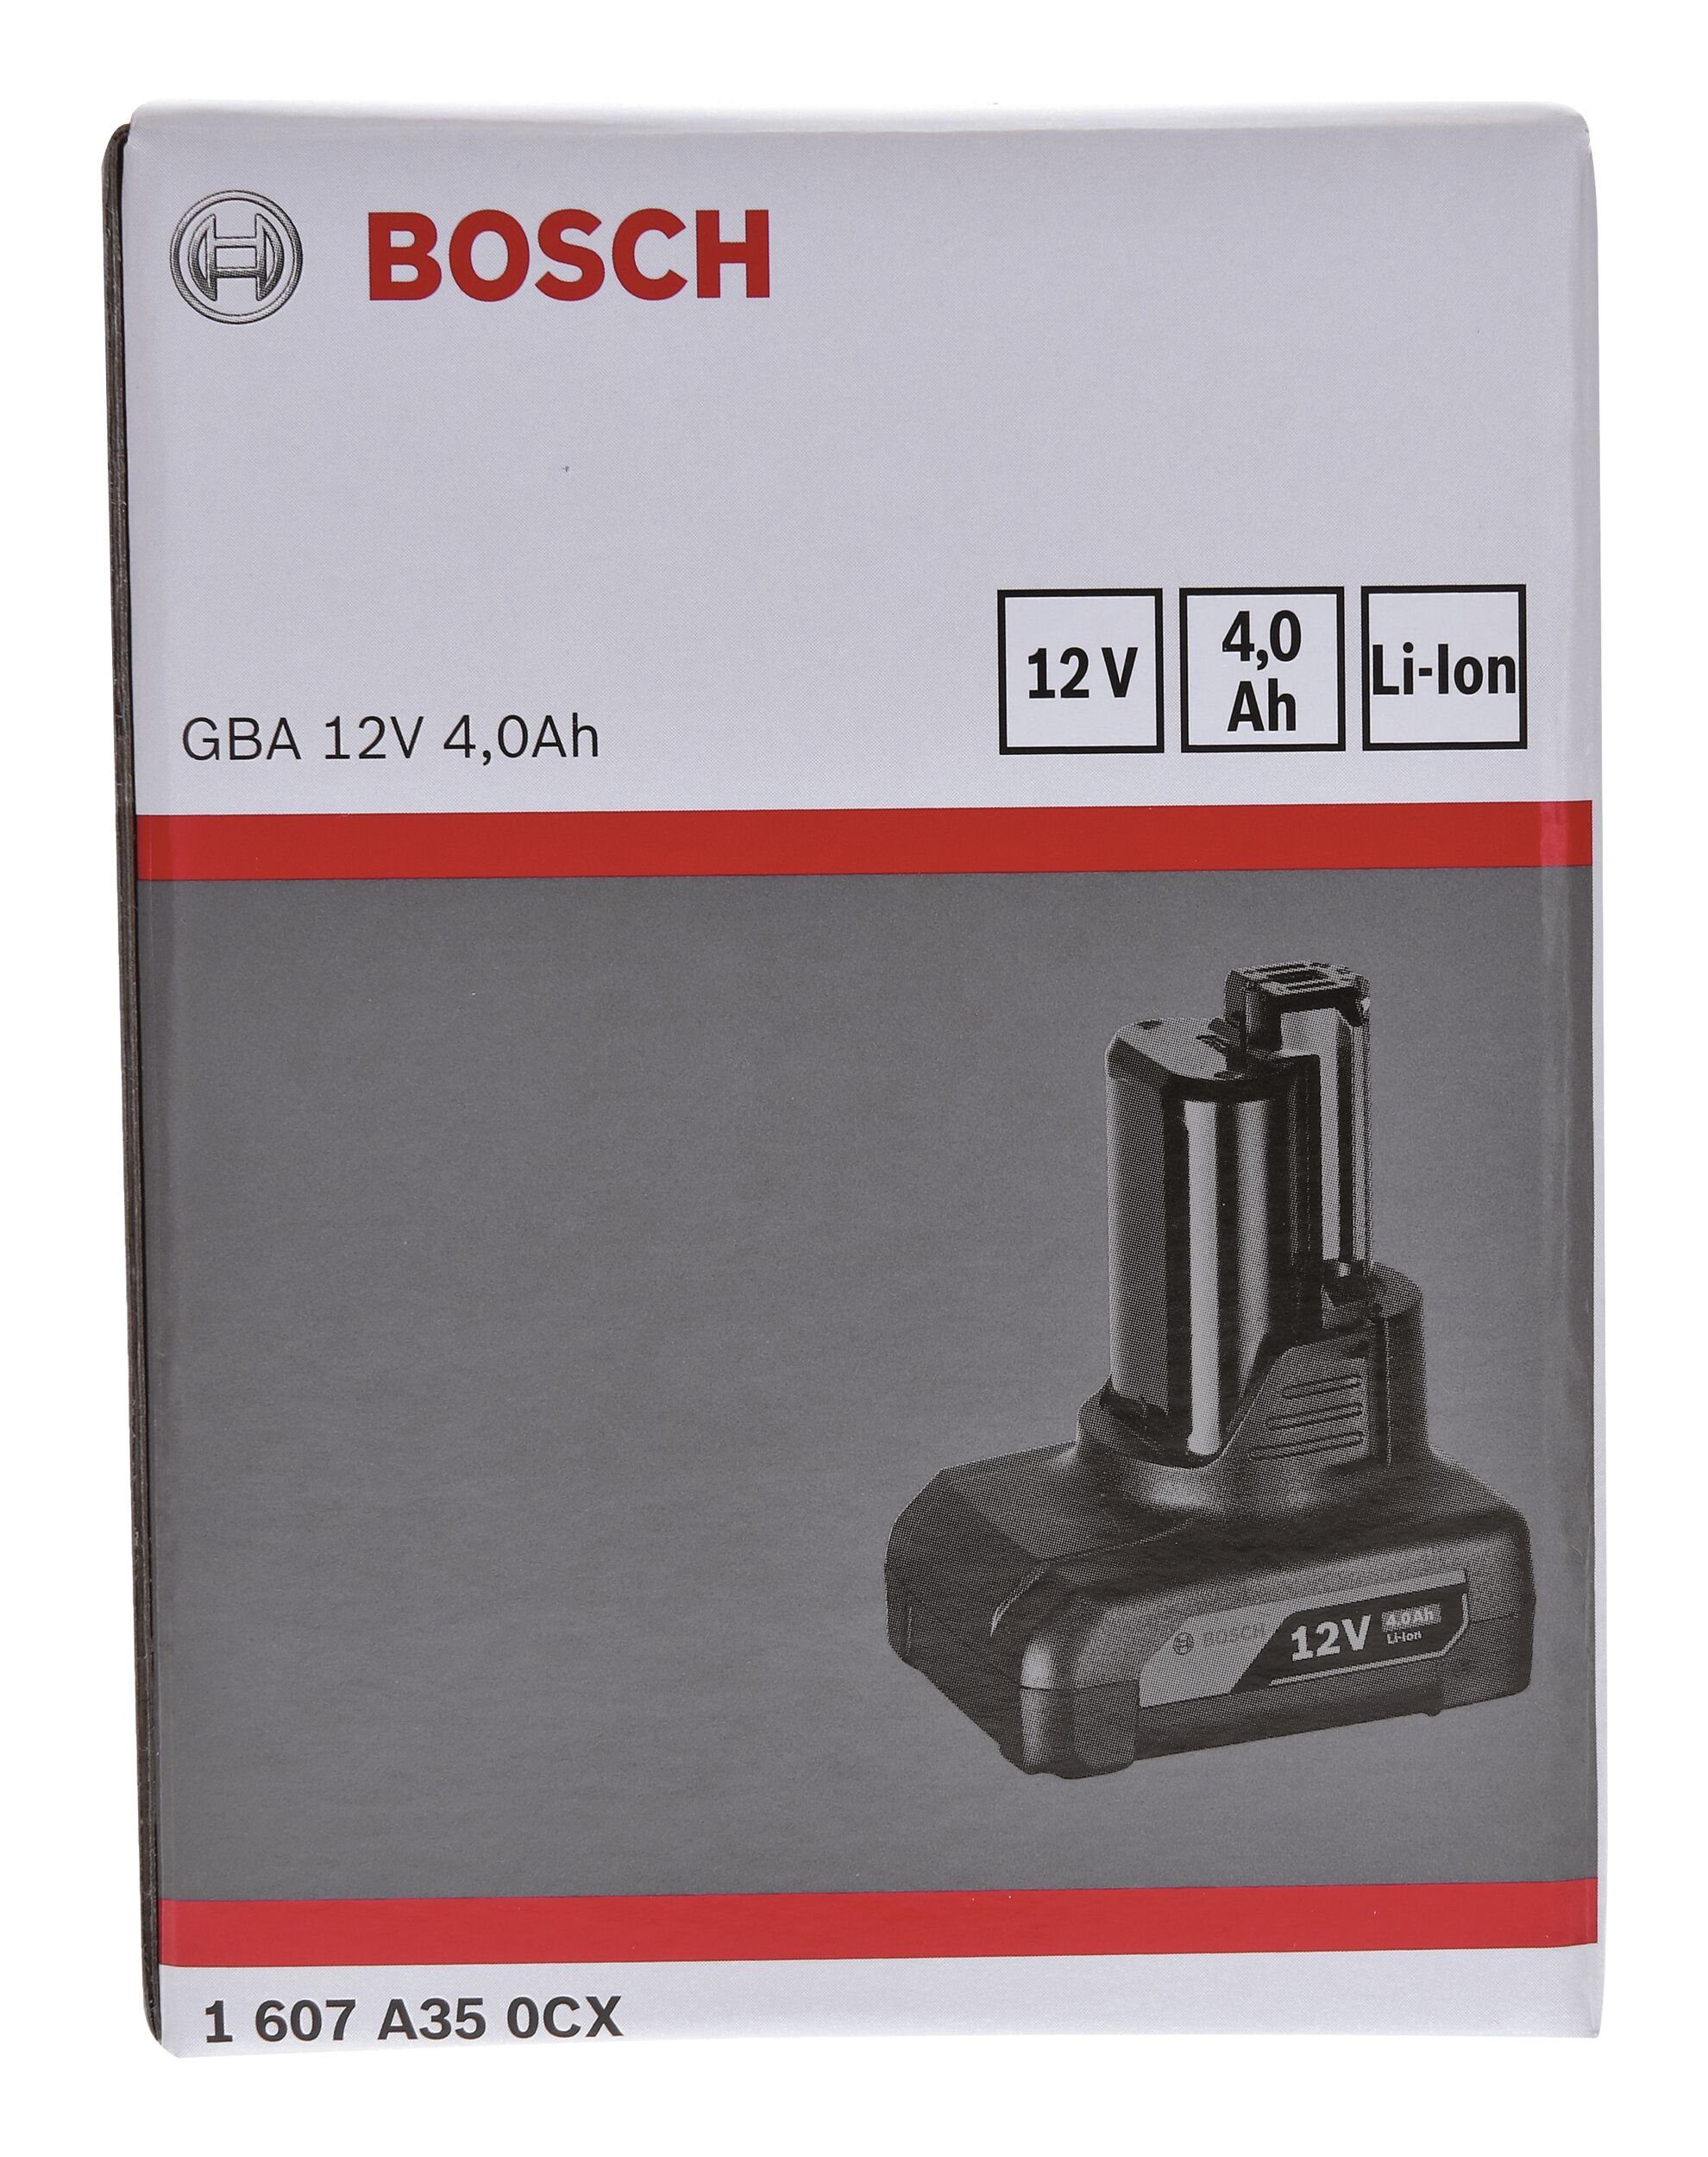 Bosch Home & 4 12 Garden GBA / Ah Einschubakkupack V Akkupacks